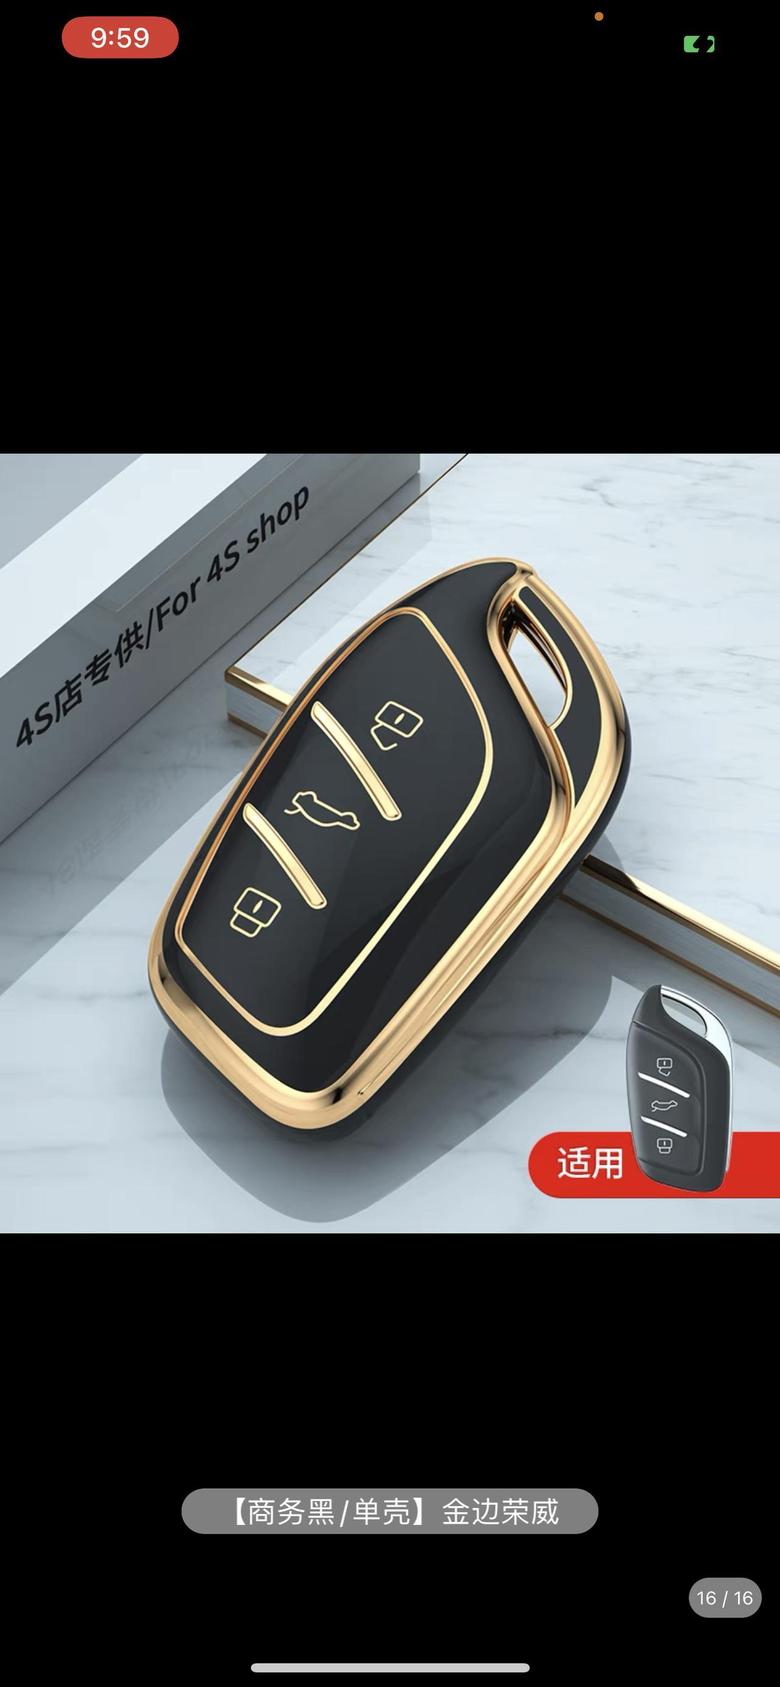 荣威erx5（混动） 在淘宝上买了两次尺寸还是不对就钥匙套的尺寸对上的。有没有杭州的车友群来一个，新人第一次买车，崭新崭新的新手，急需大佬指导。